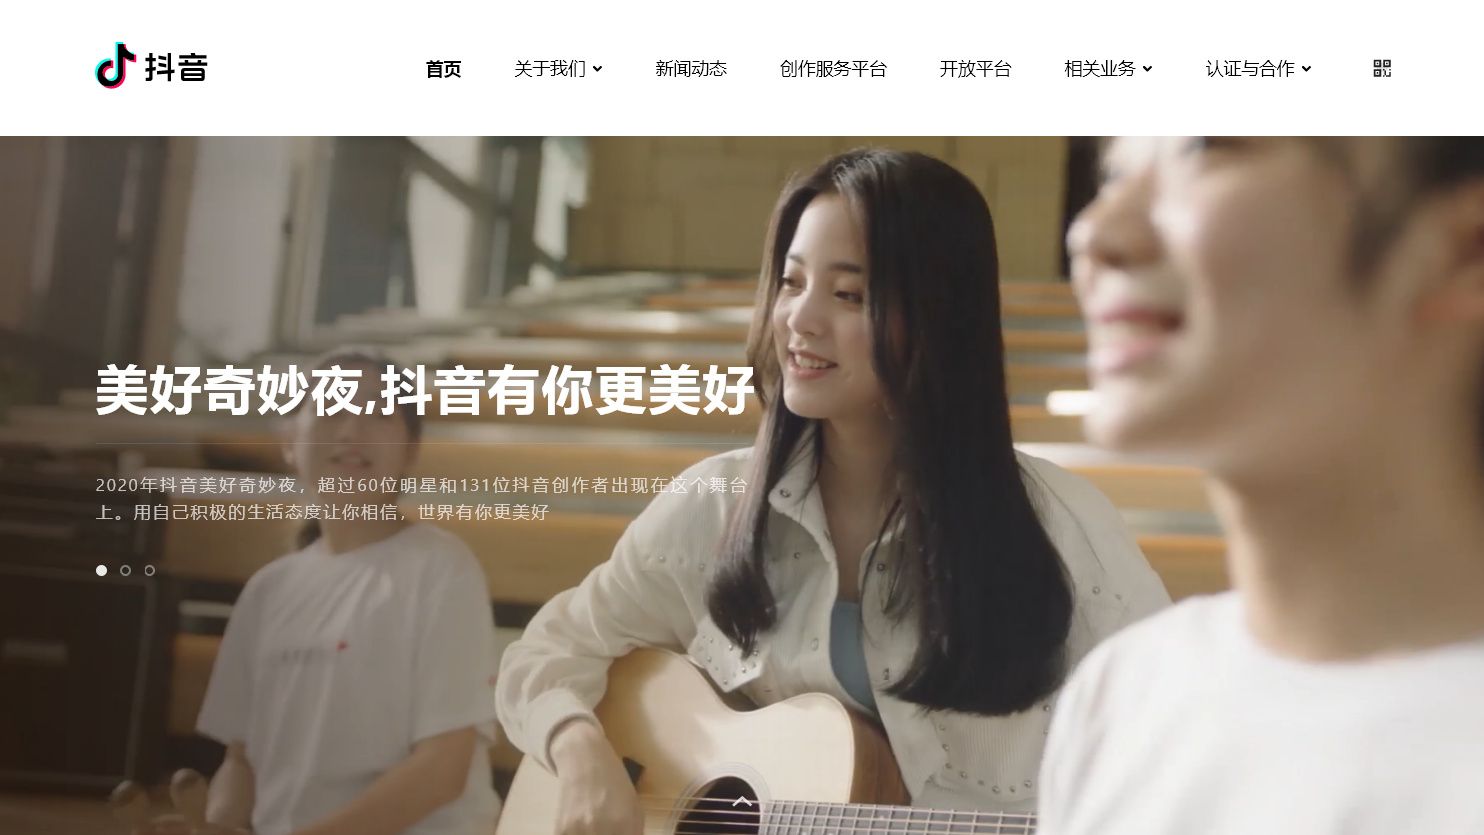 中国のネットコンテンツ｢金持ち自慢｣禁止の訳 ショート動画｢抖音｣が3973アカウントを処分 | 「財新」中国Biz＆Tech | 東洋経済オンライン